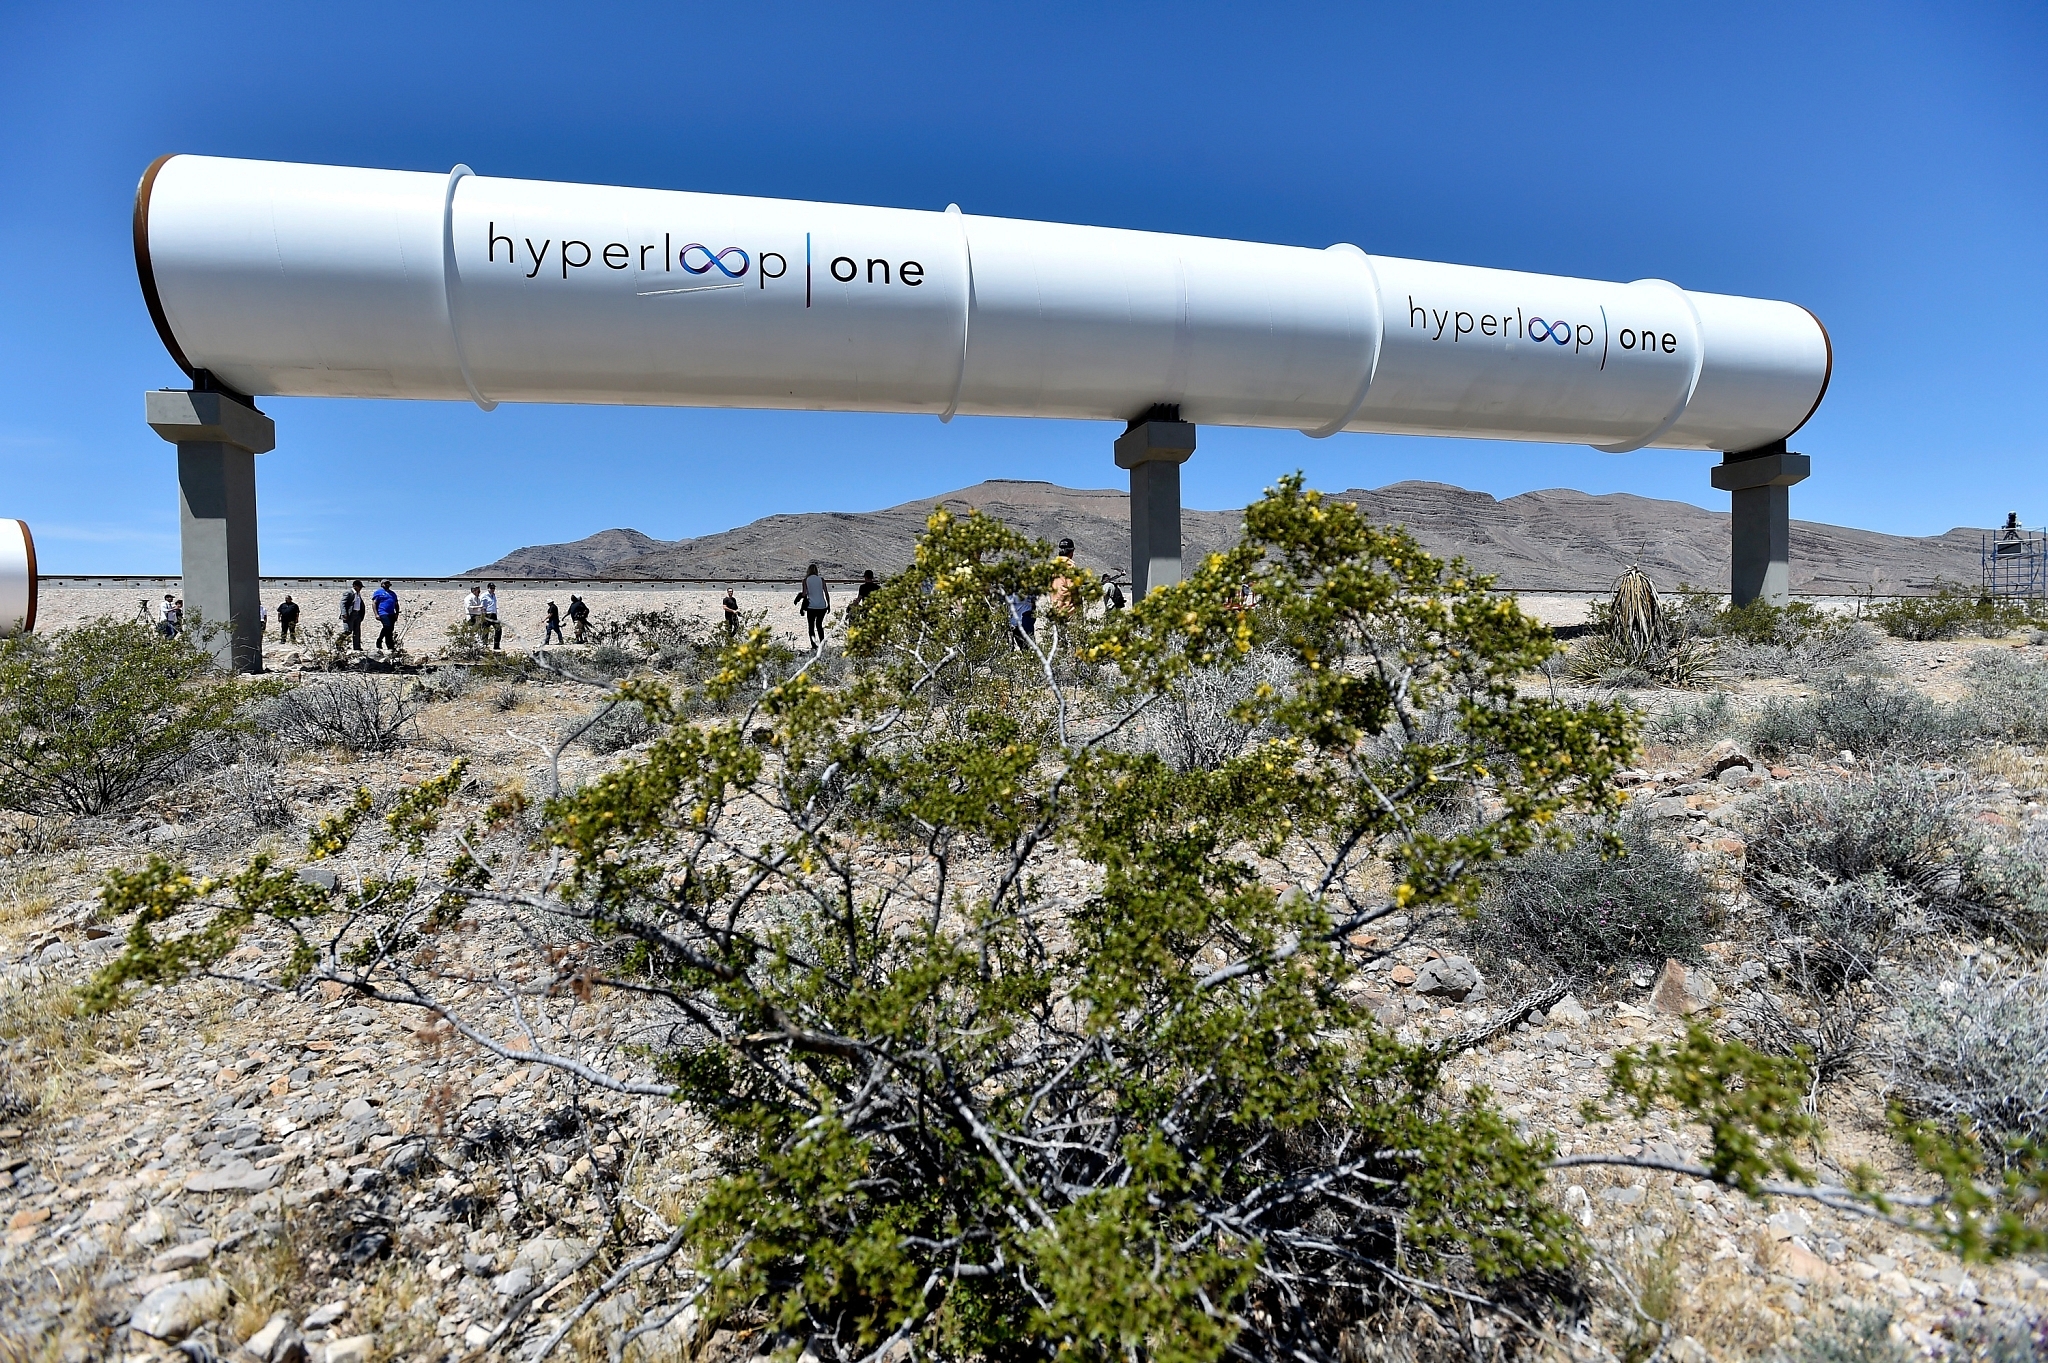 Virgin Hyperloop One’s test track in Las Vegas, Nevada